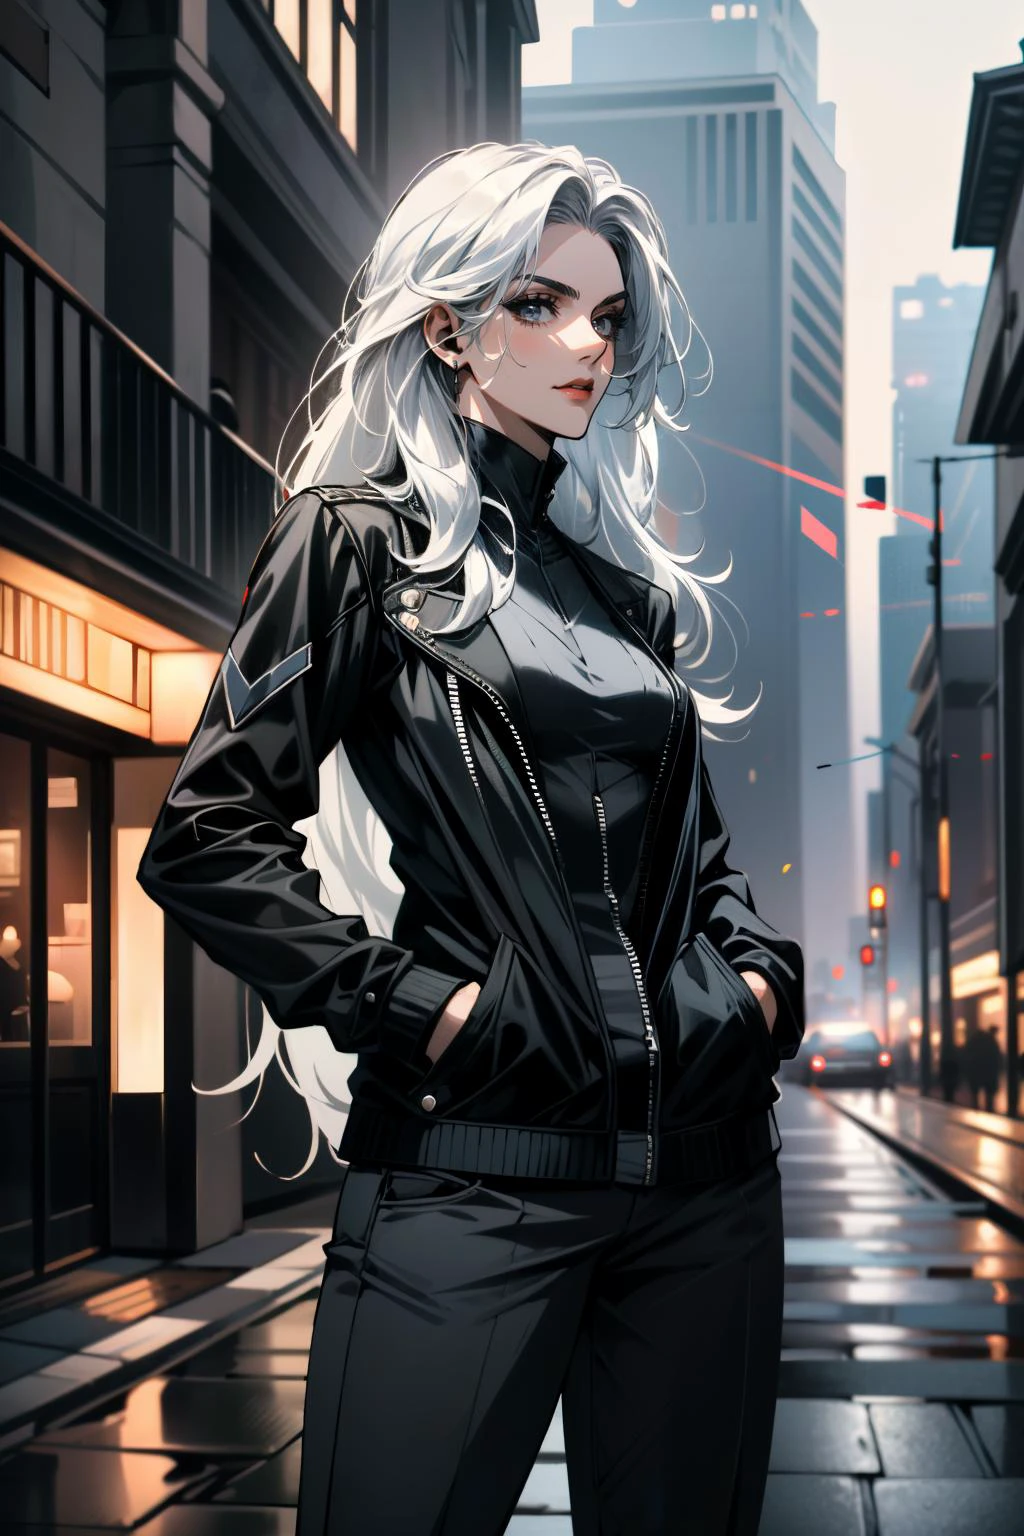 ((超詳細, 傑作, 荒謬的))
 蜘蛛黑貓, 1個女孩, 白色的頭髮, 長髮, 雙手插在口袋裡, 展現出不經意的魅力